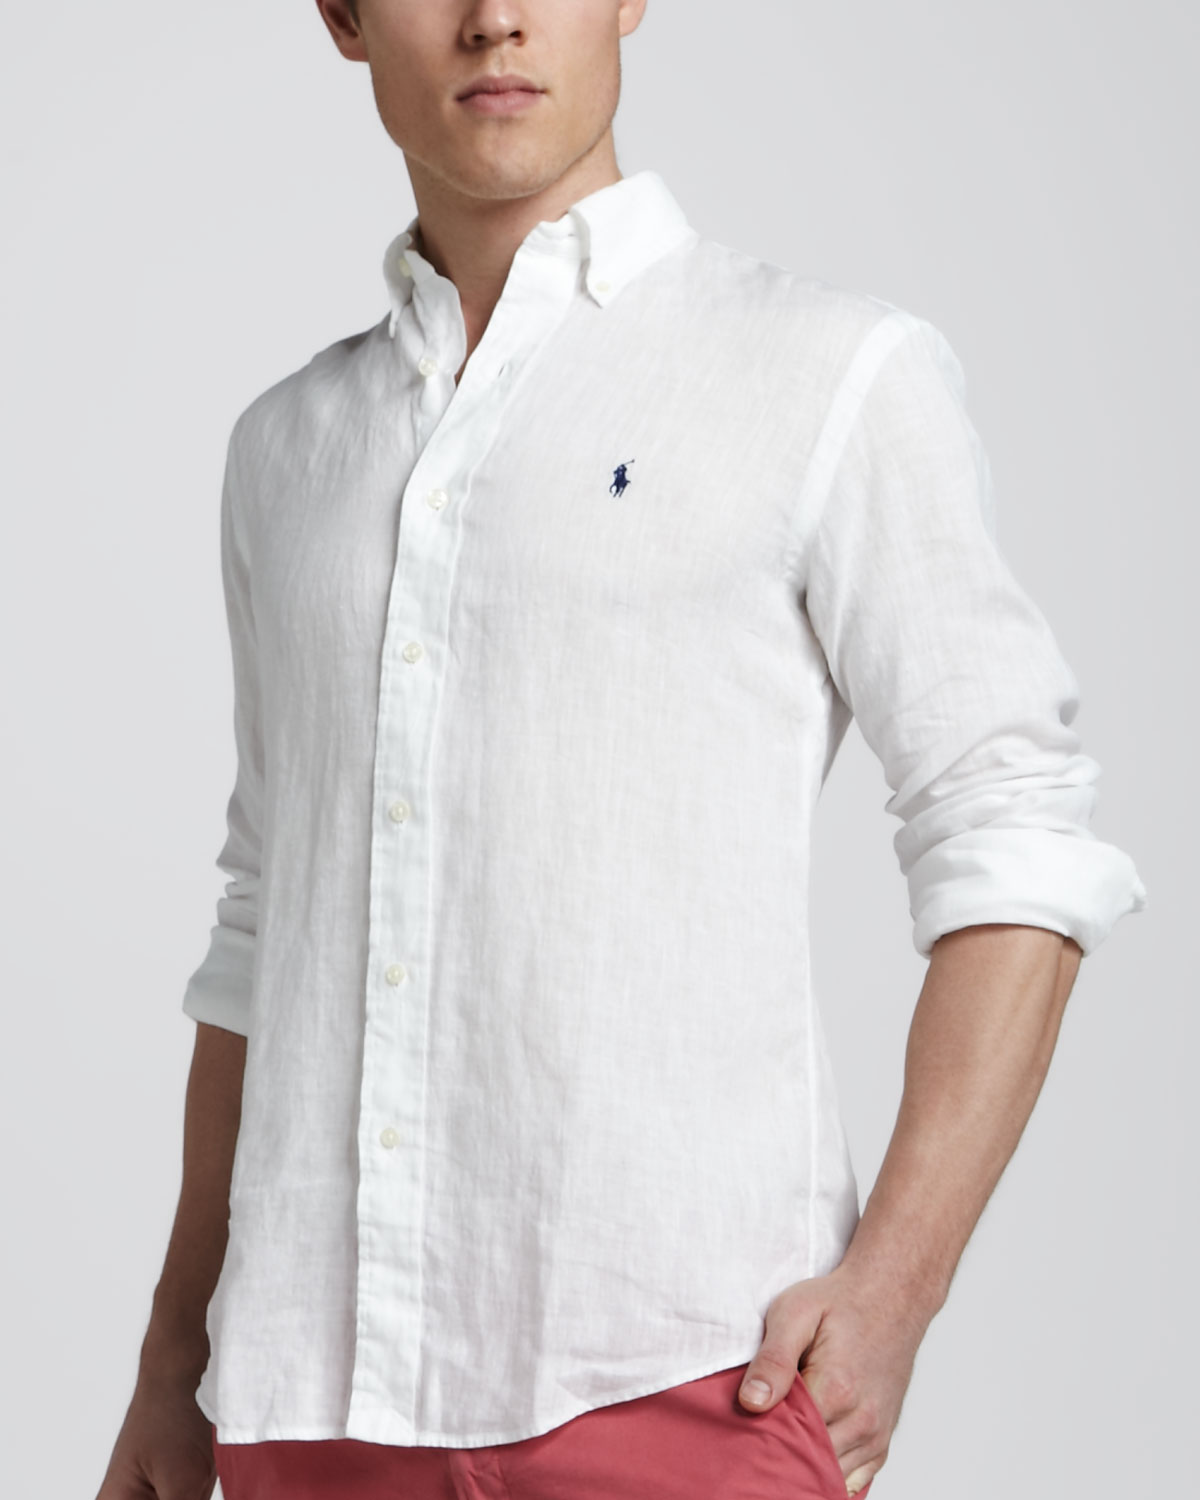 Lyst - Polo Ralph Lauren Linen Sport Shirt White in White for Men